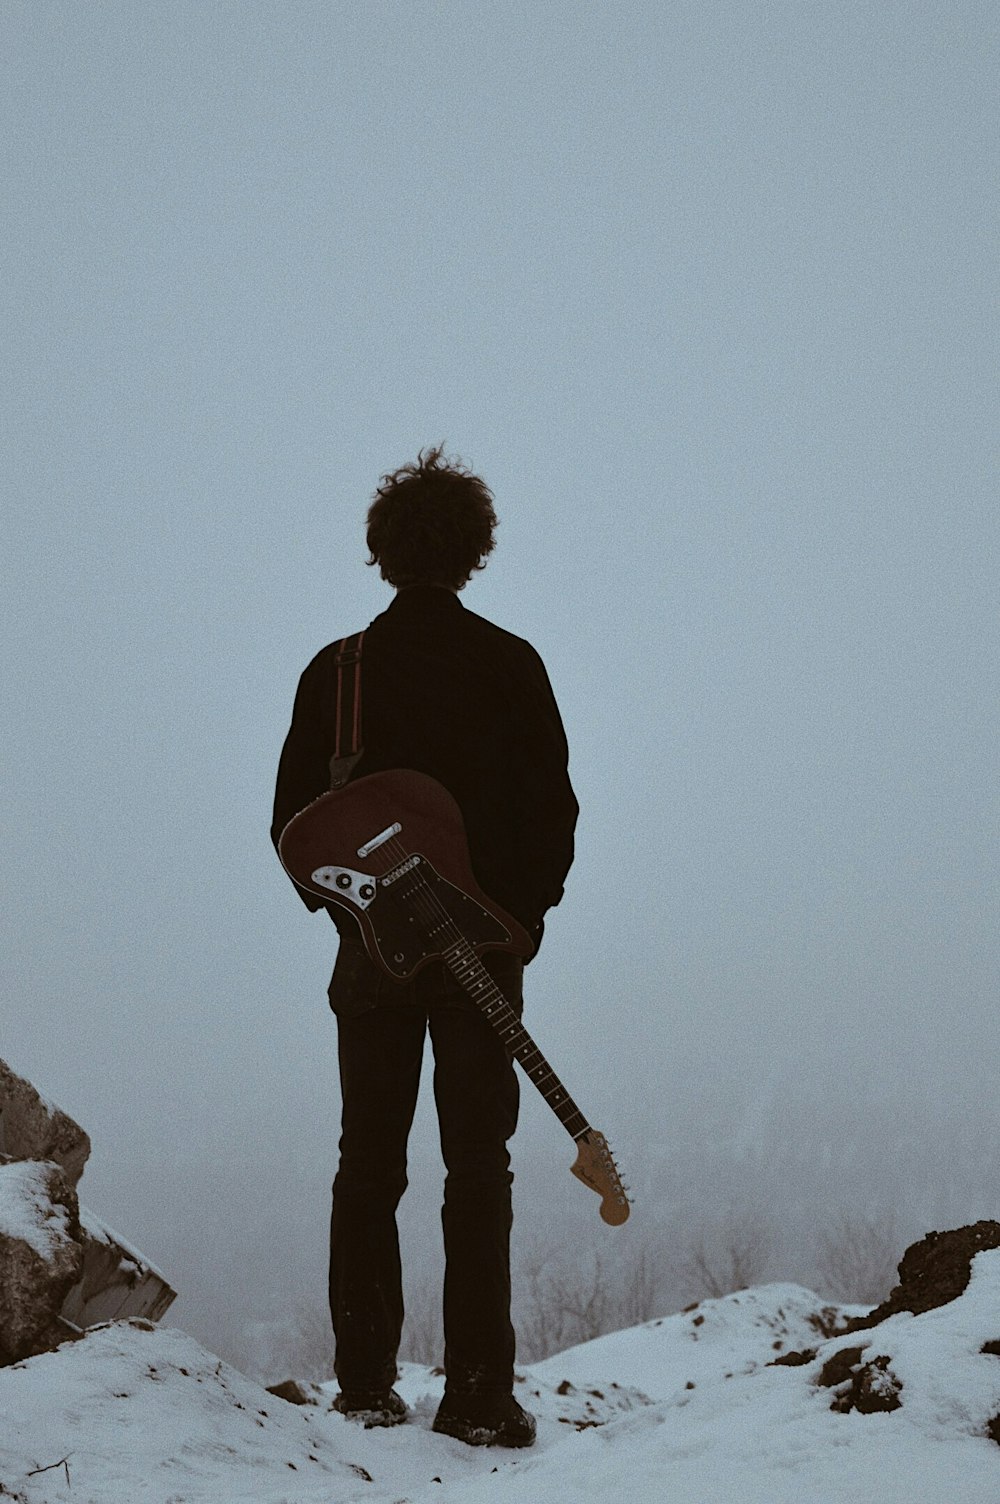 Mann mit Gitarre auf dem Rücken steht auf Klippe